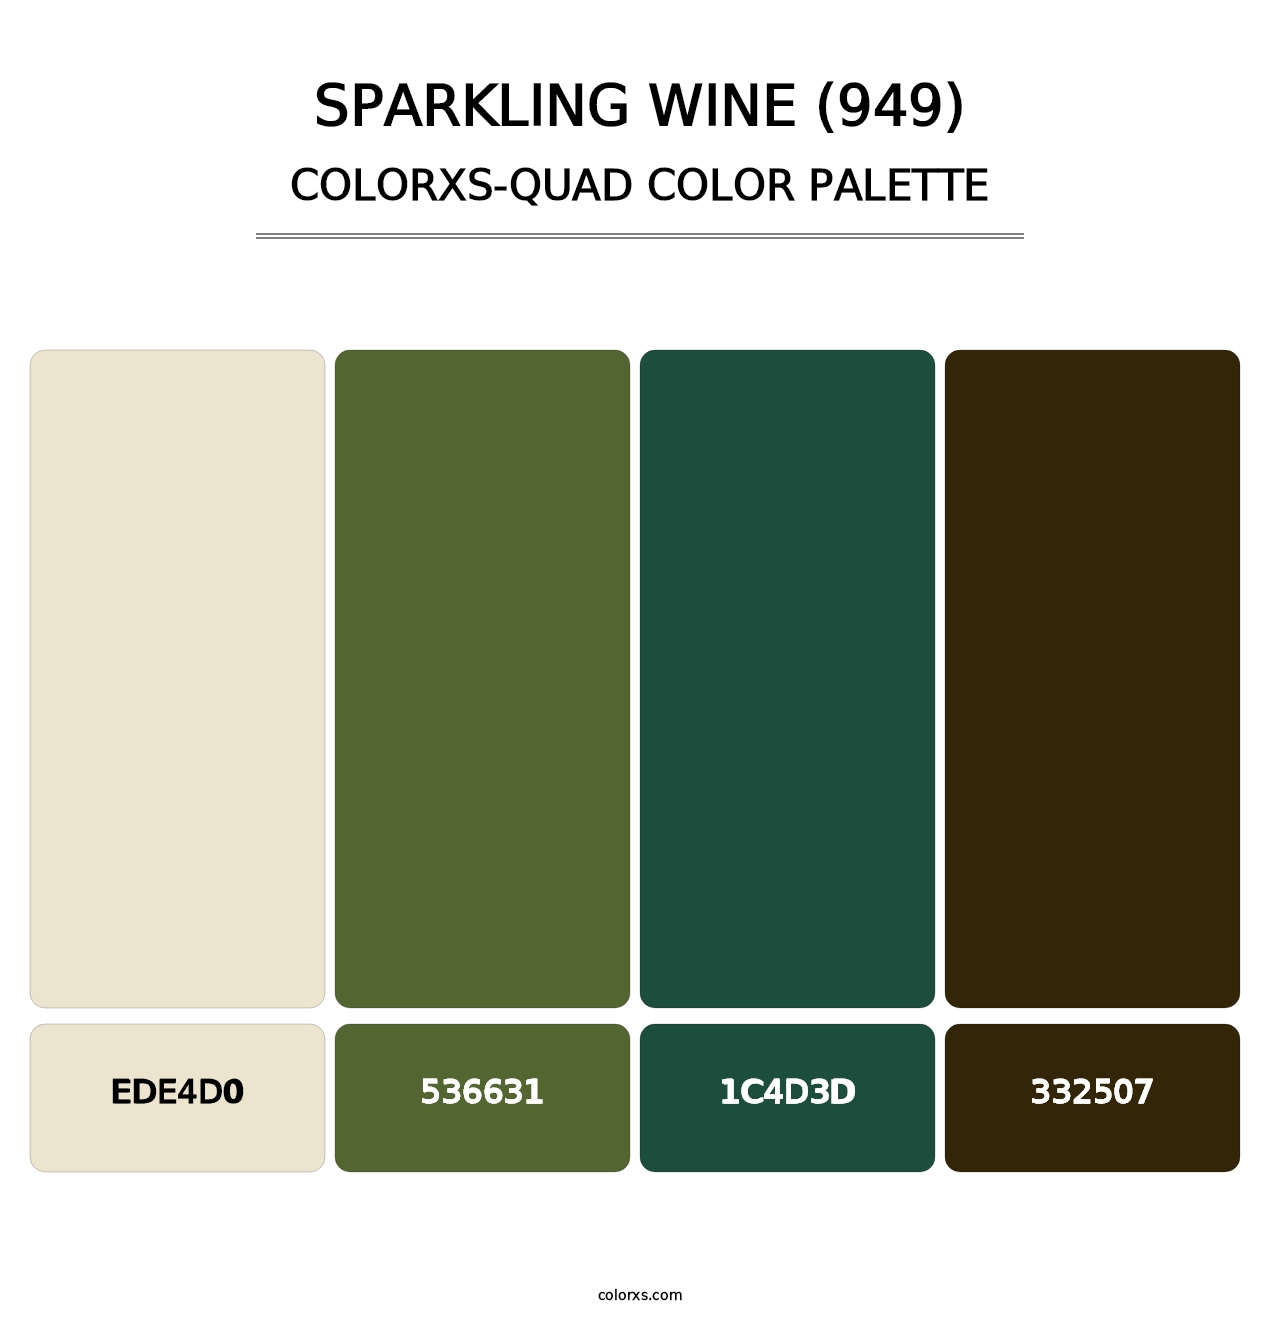 Sparkling Wine (949) - Colorxs Quad Palette